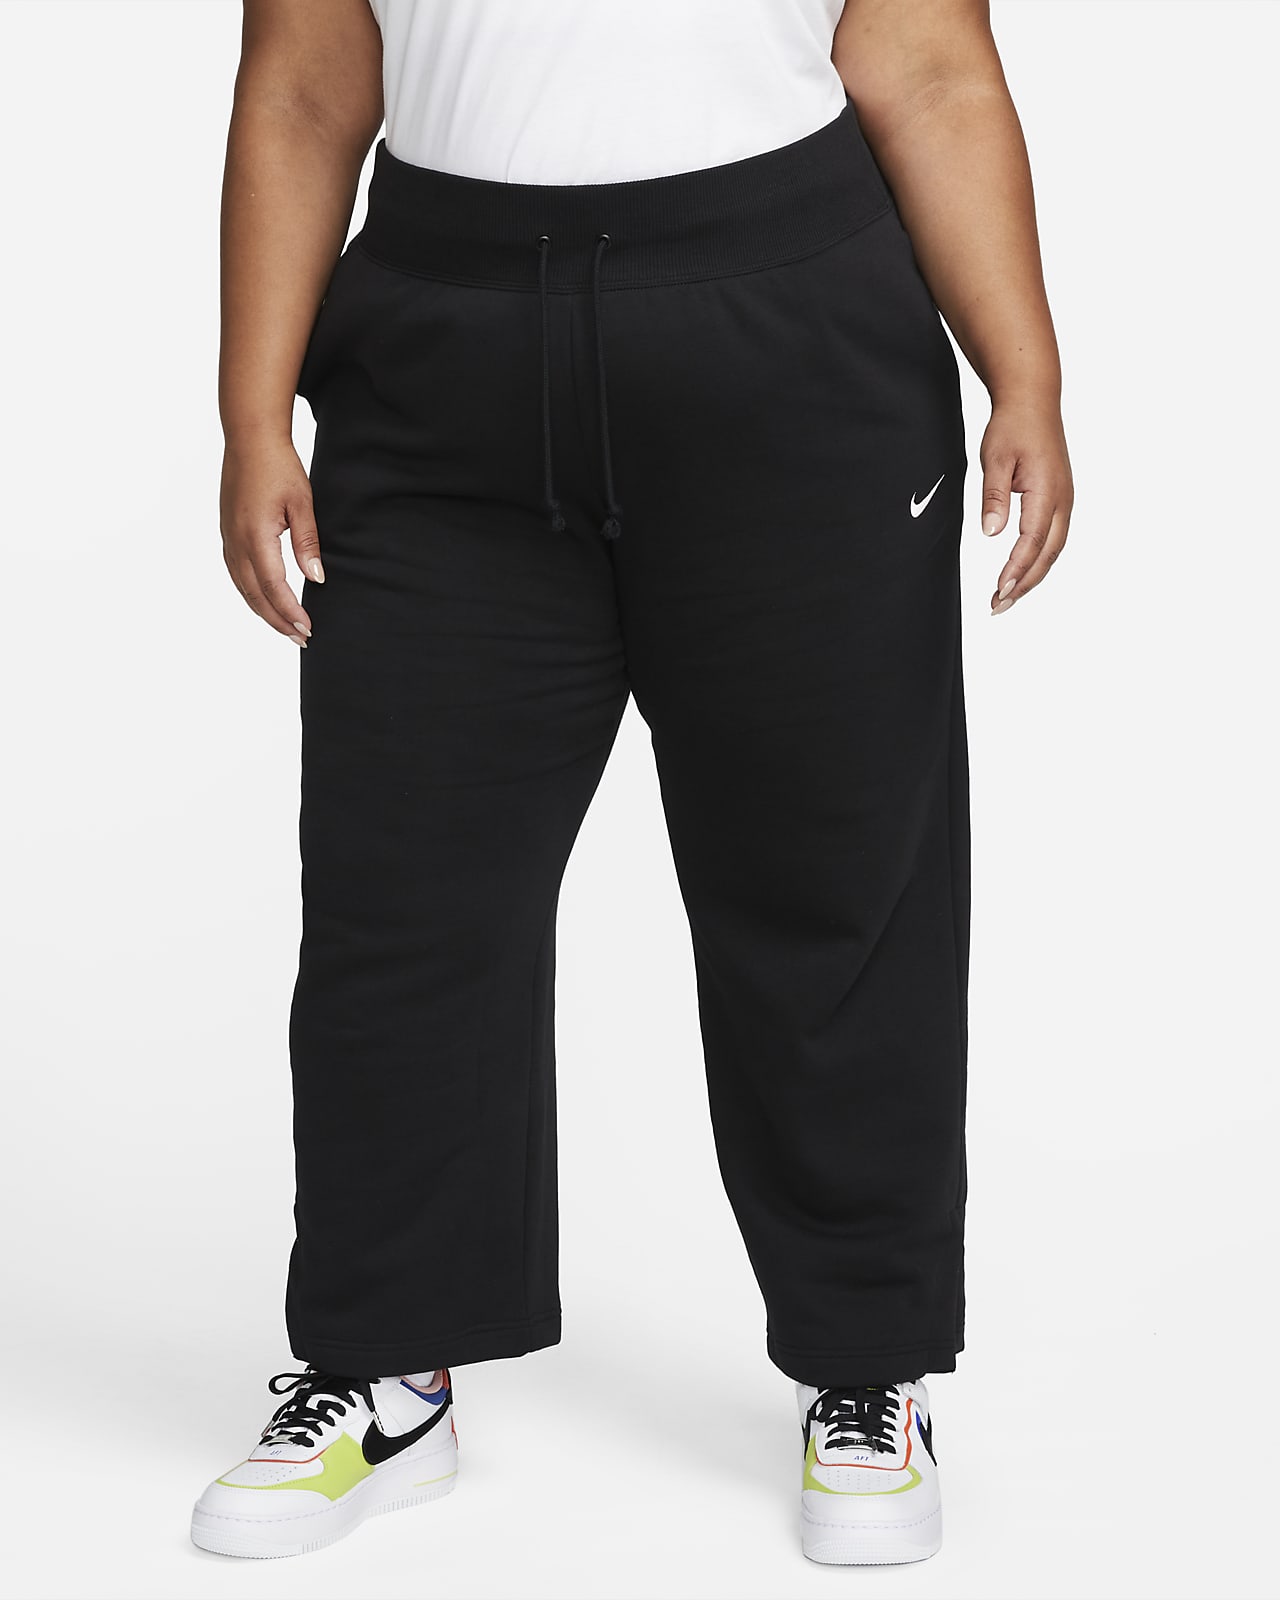 Nike Sportswear Phoenix Fleece Pantalons de xandall de cintura alta i camals amples (Talles grans) - Dona